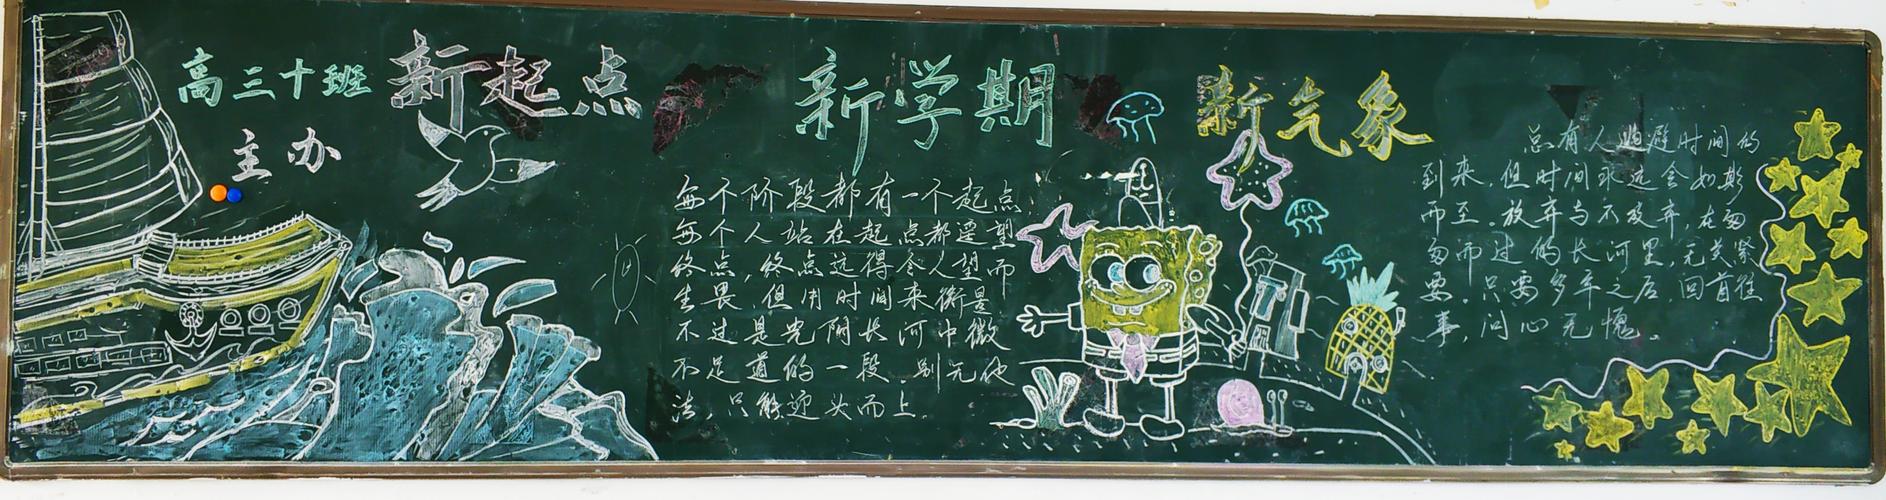 其它 汉阳一中9月黑板报评比 写美篇 高三年级正处紧张复习备考的关键